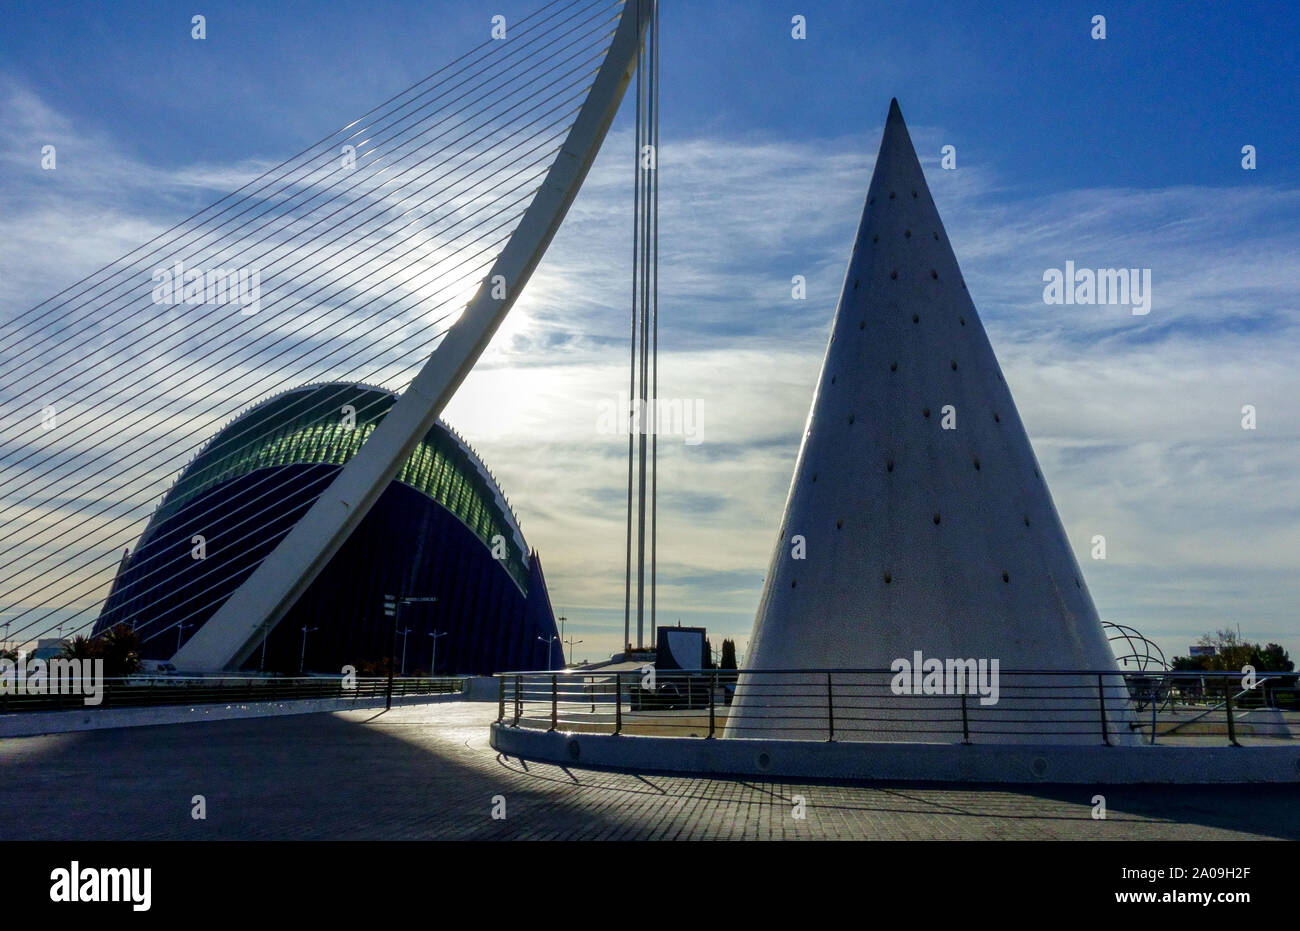 Valence Espagne vue sur la ville Valence Cité des Arts et des Sciences, Agora, pont futuriste de la ville et cône dans le soleil matin architecture espagnole moderne Banque D'Images